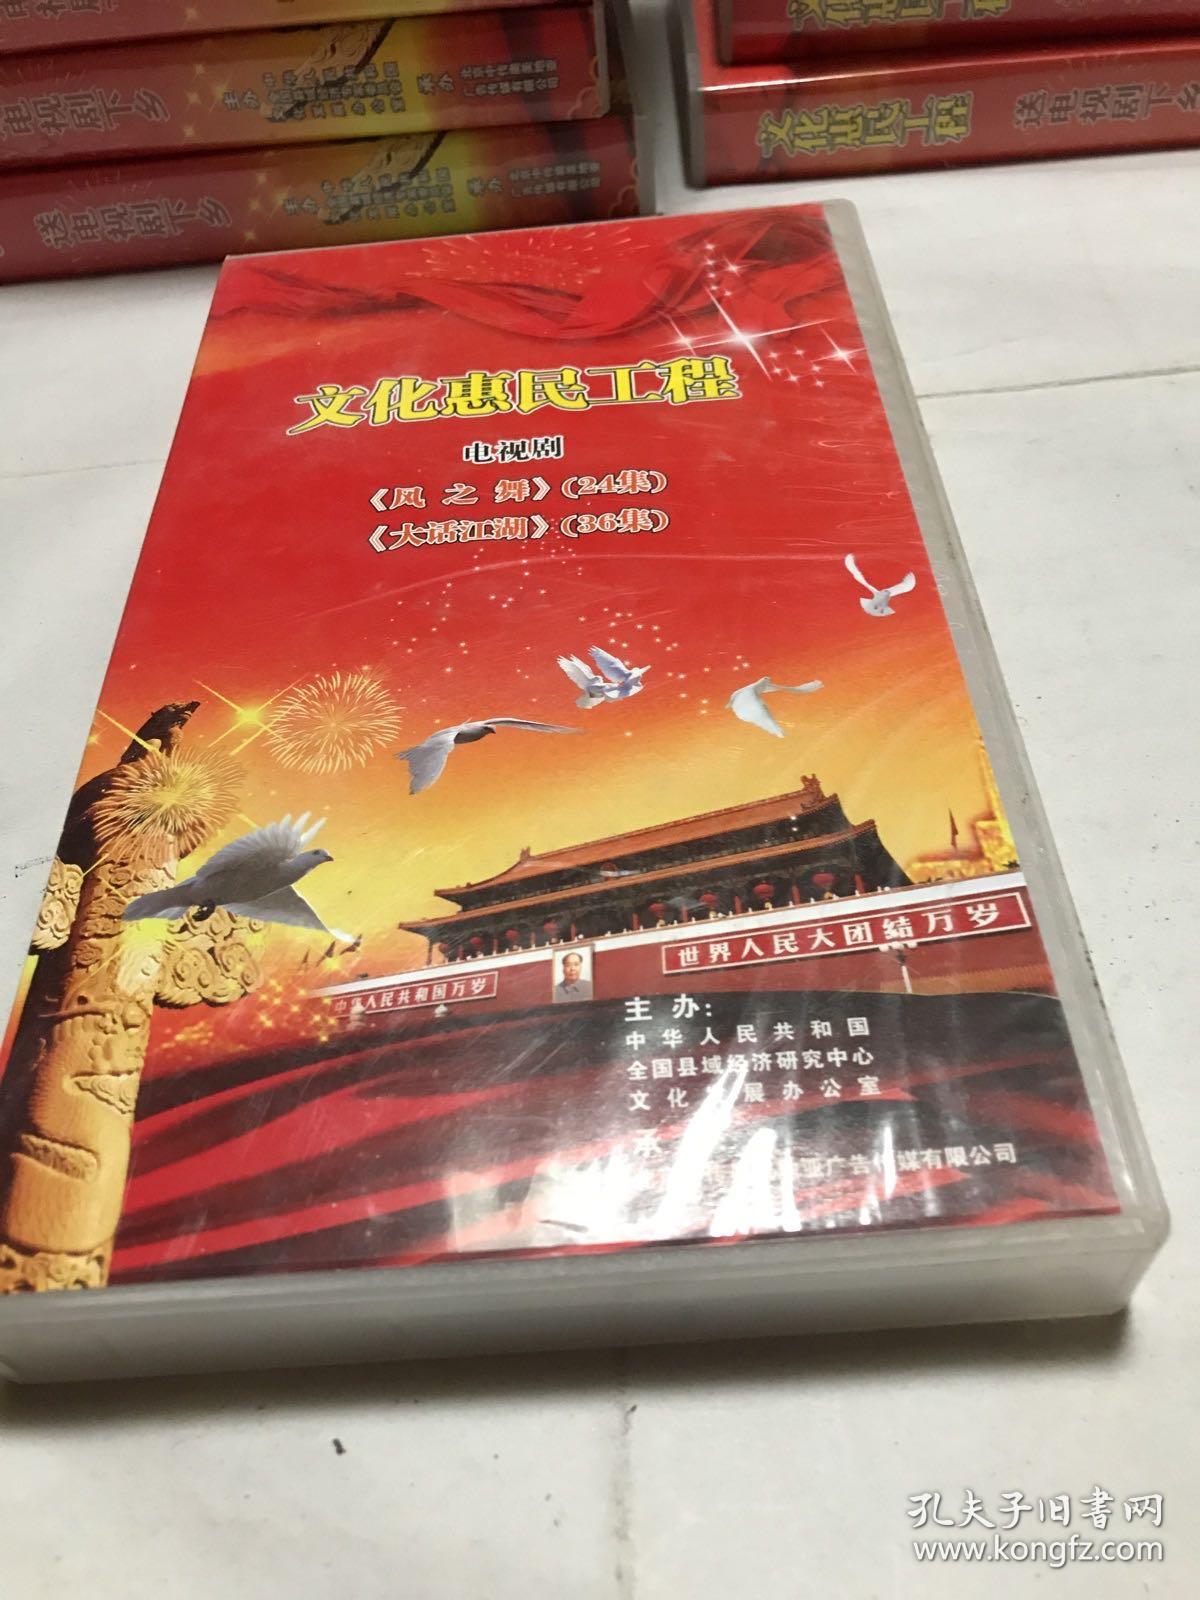 巜风之舞》（24集）；
巜大话江湖》（36集）文化惠民工程，正版，全网唯一，电视台DVD藏片 电视剧